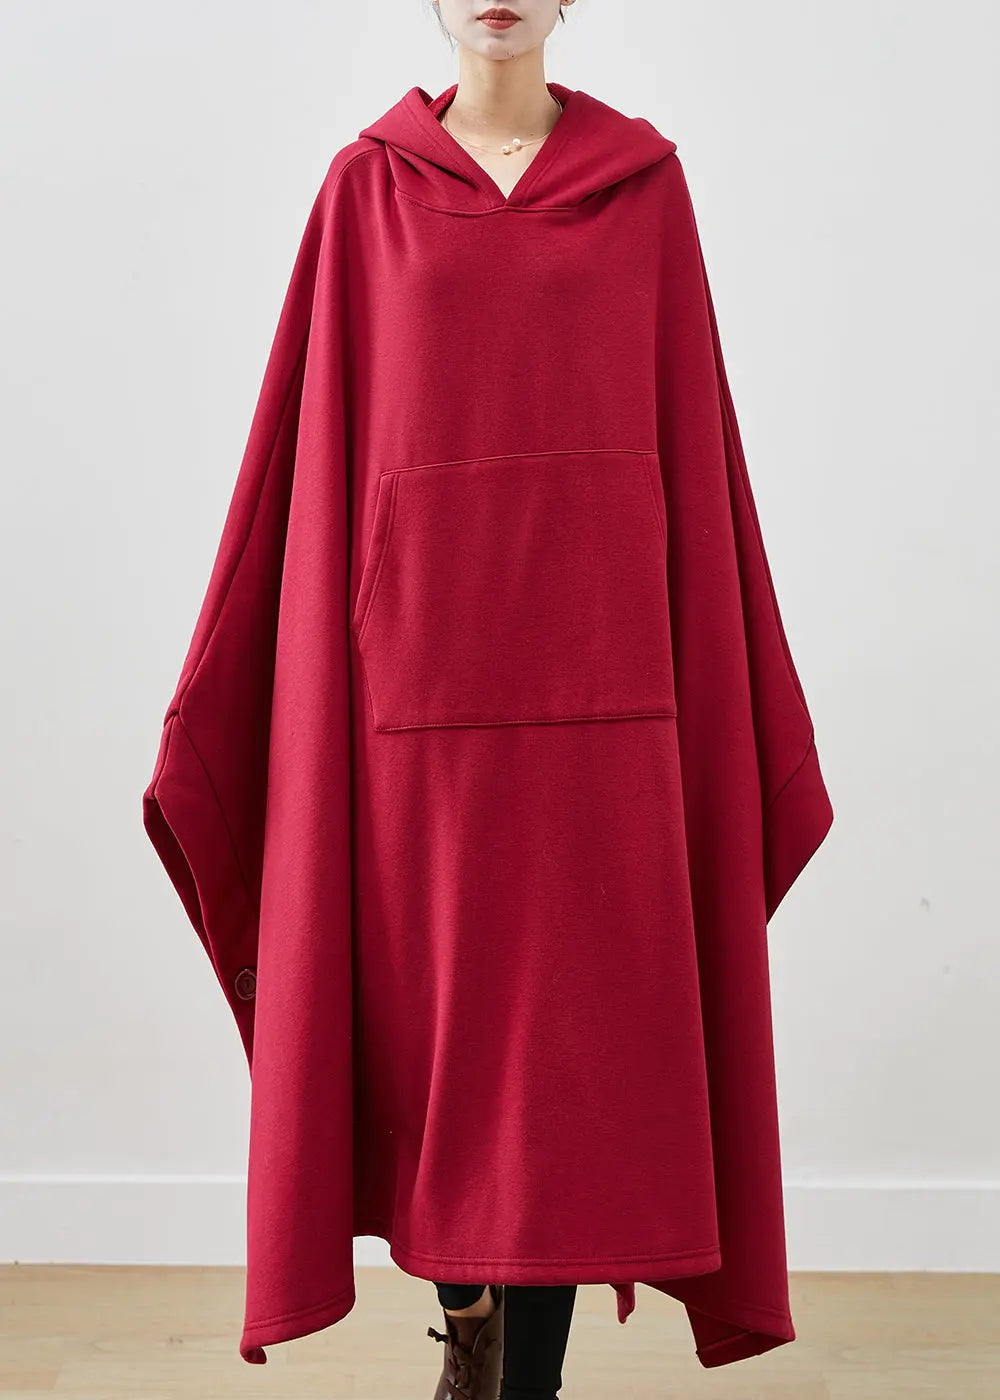 Art Mulberry Asymmetrical Oversized Cotton Sweatshirts Dress Winter Ada Fashion